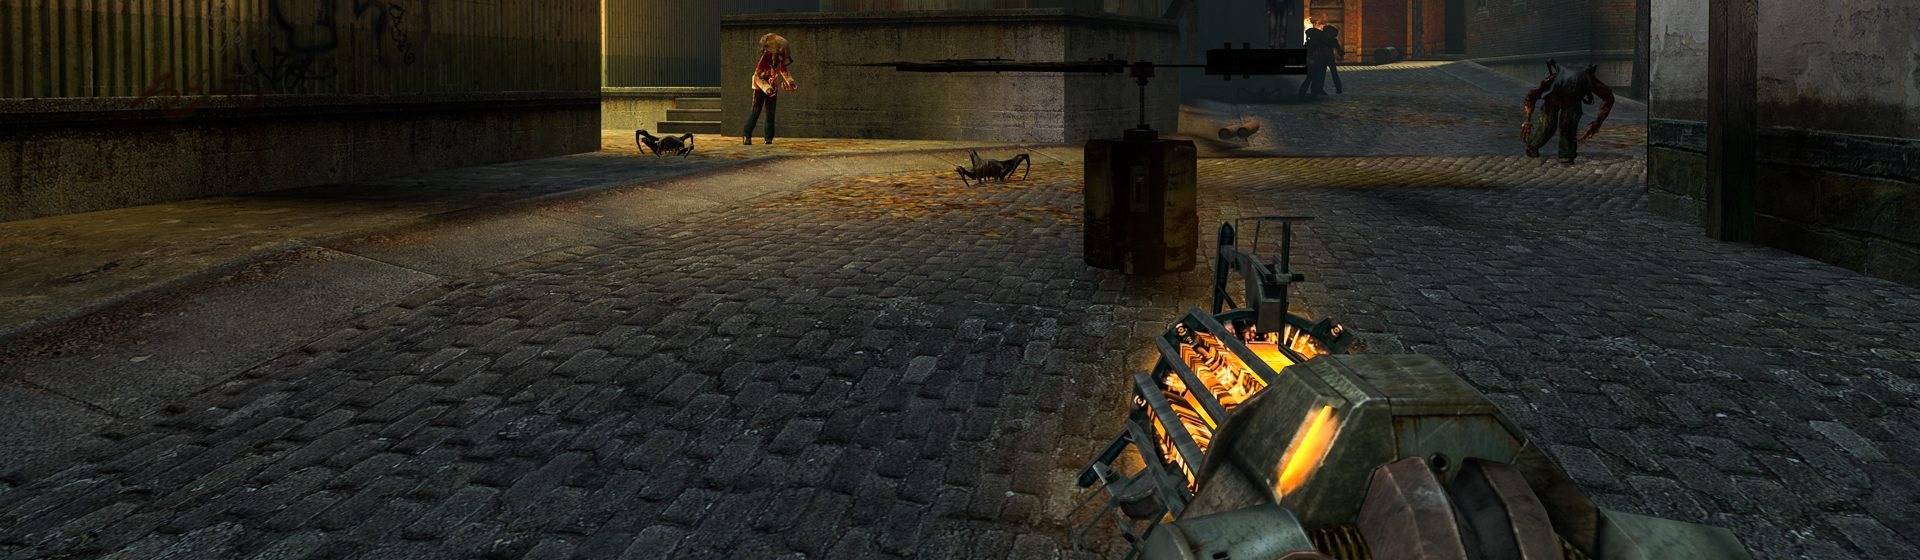 Half-Life 2 nhận bản cập nhật mới sau... 15 năm ra mắt